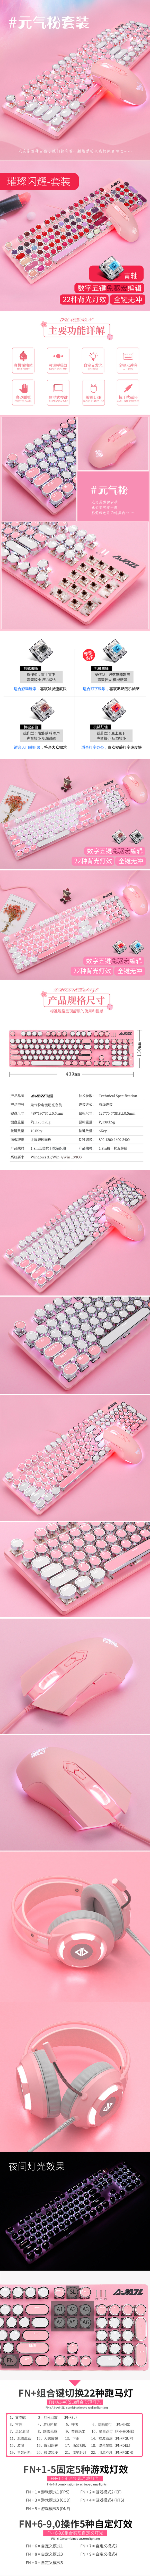 淘宝美工晓夏可爱女生粉色真机械键盘鼠标套装作品